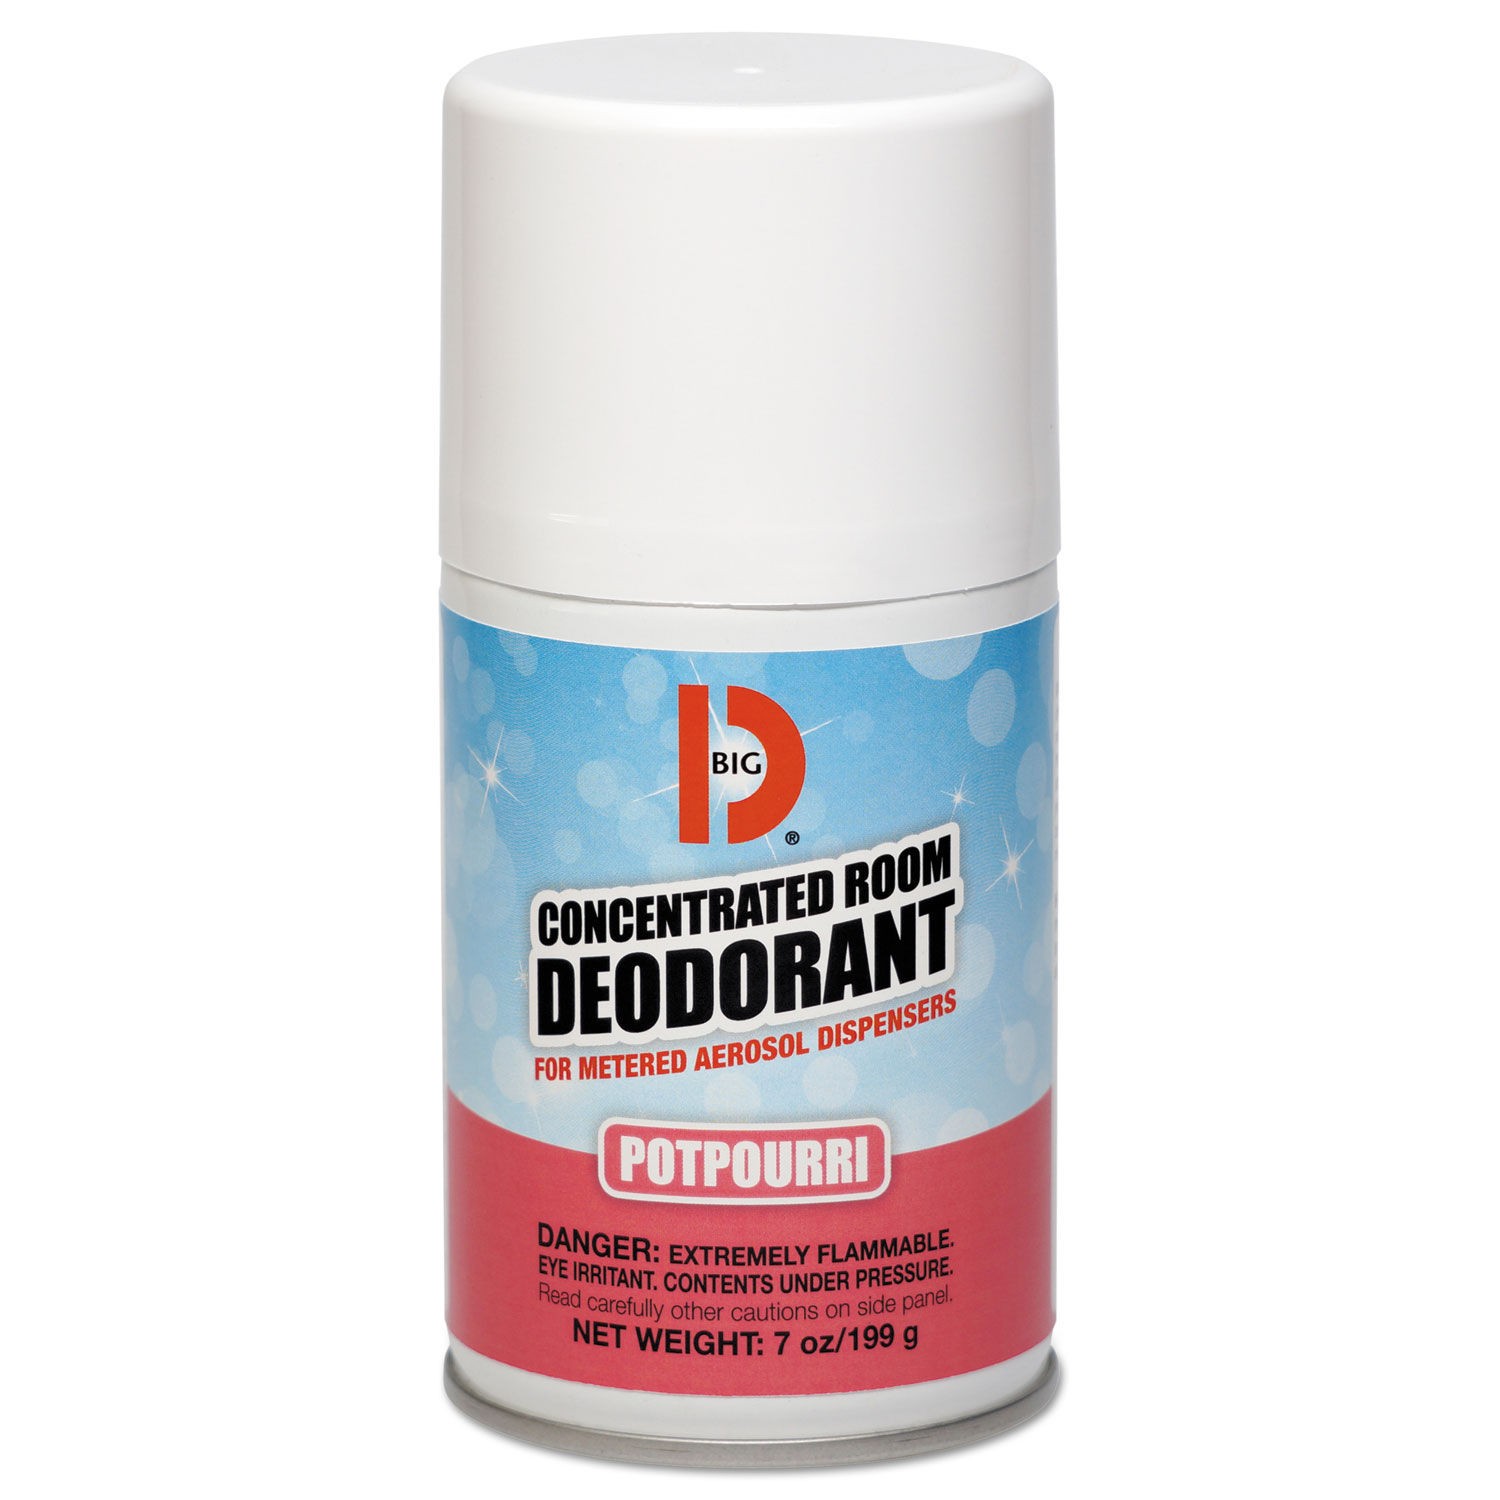 Metered Concentrated Room Deodorant, Potpourri Scent, 7 oz Aerosol, 12/Carton